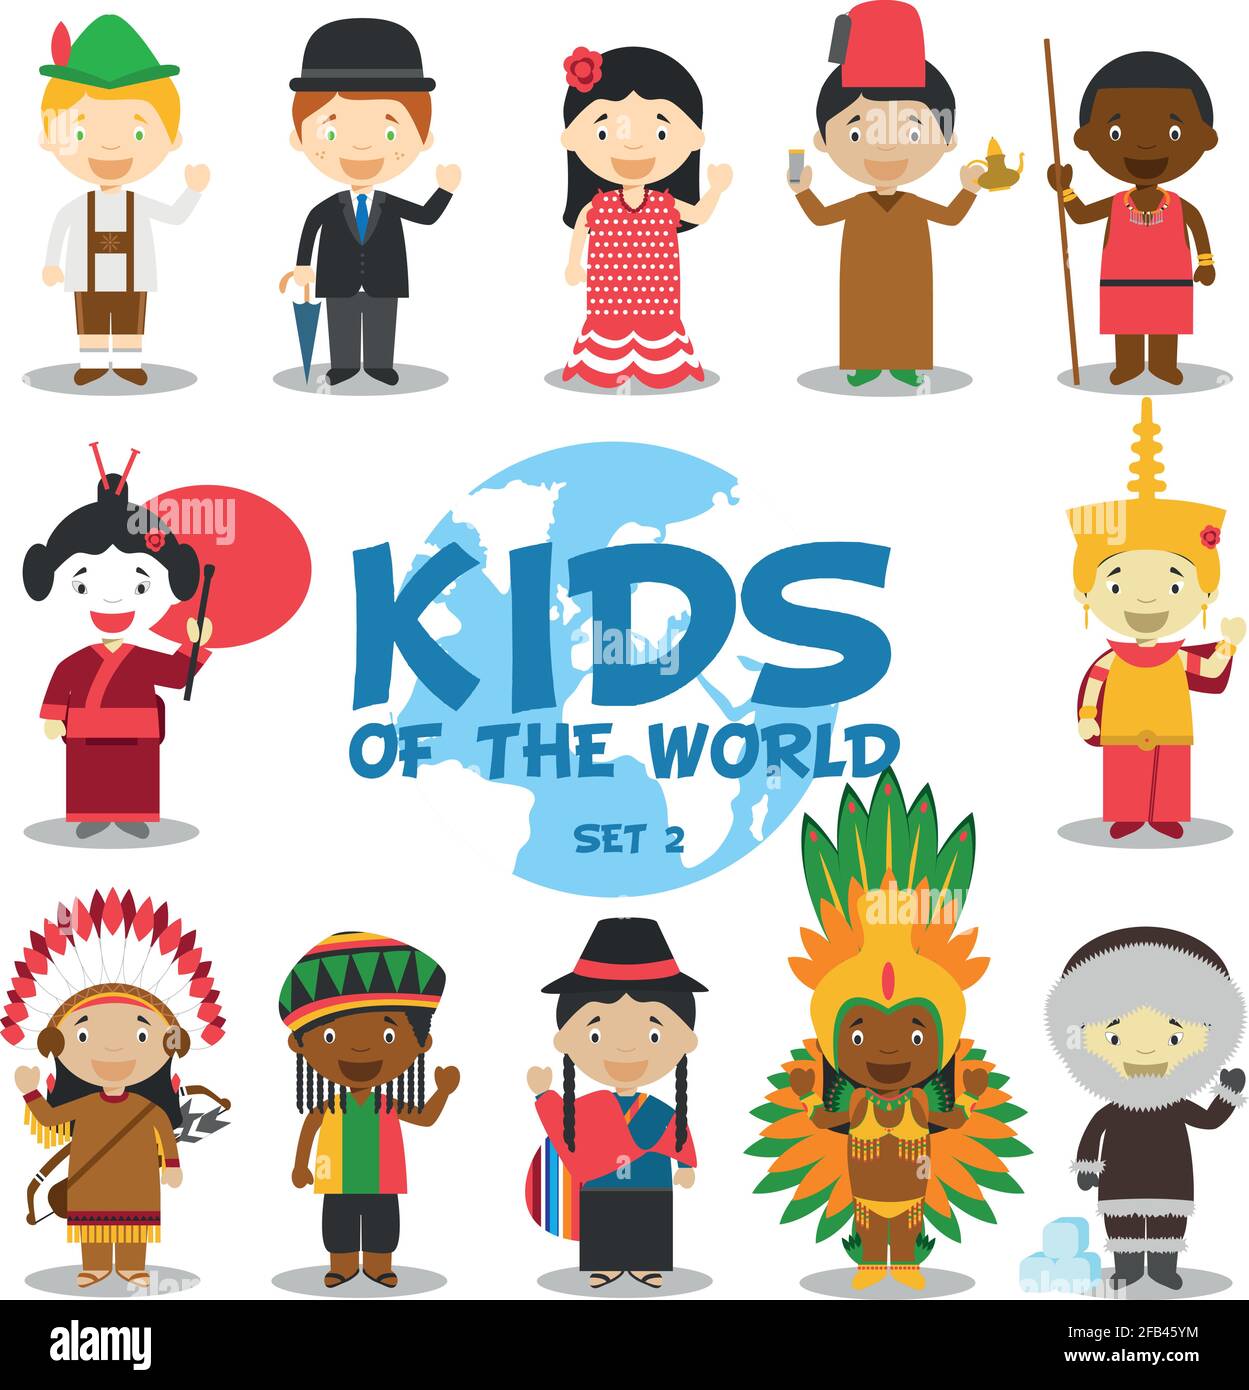 Bambini del mondo illustrazione vettoriale: Nazionalità set 2. Set di 12 personaggi vestiti in diversi costumi nazionali (Germania, Regno Unito, Spagna, Marocco, Illustrazione Vettoriale